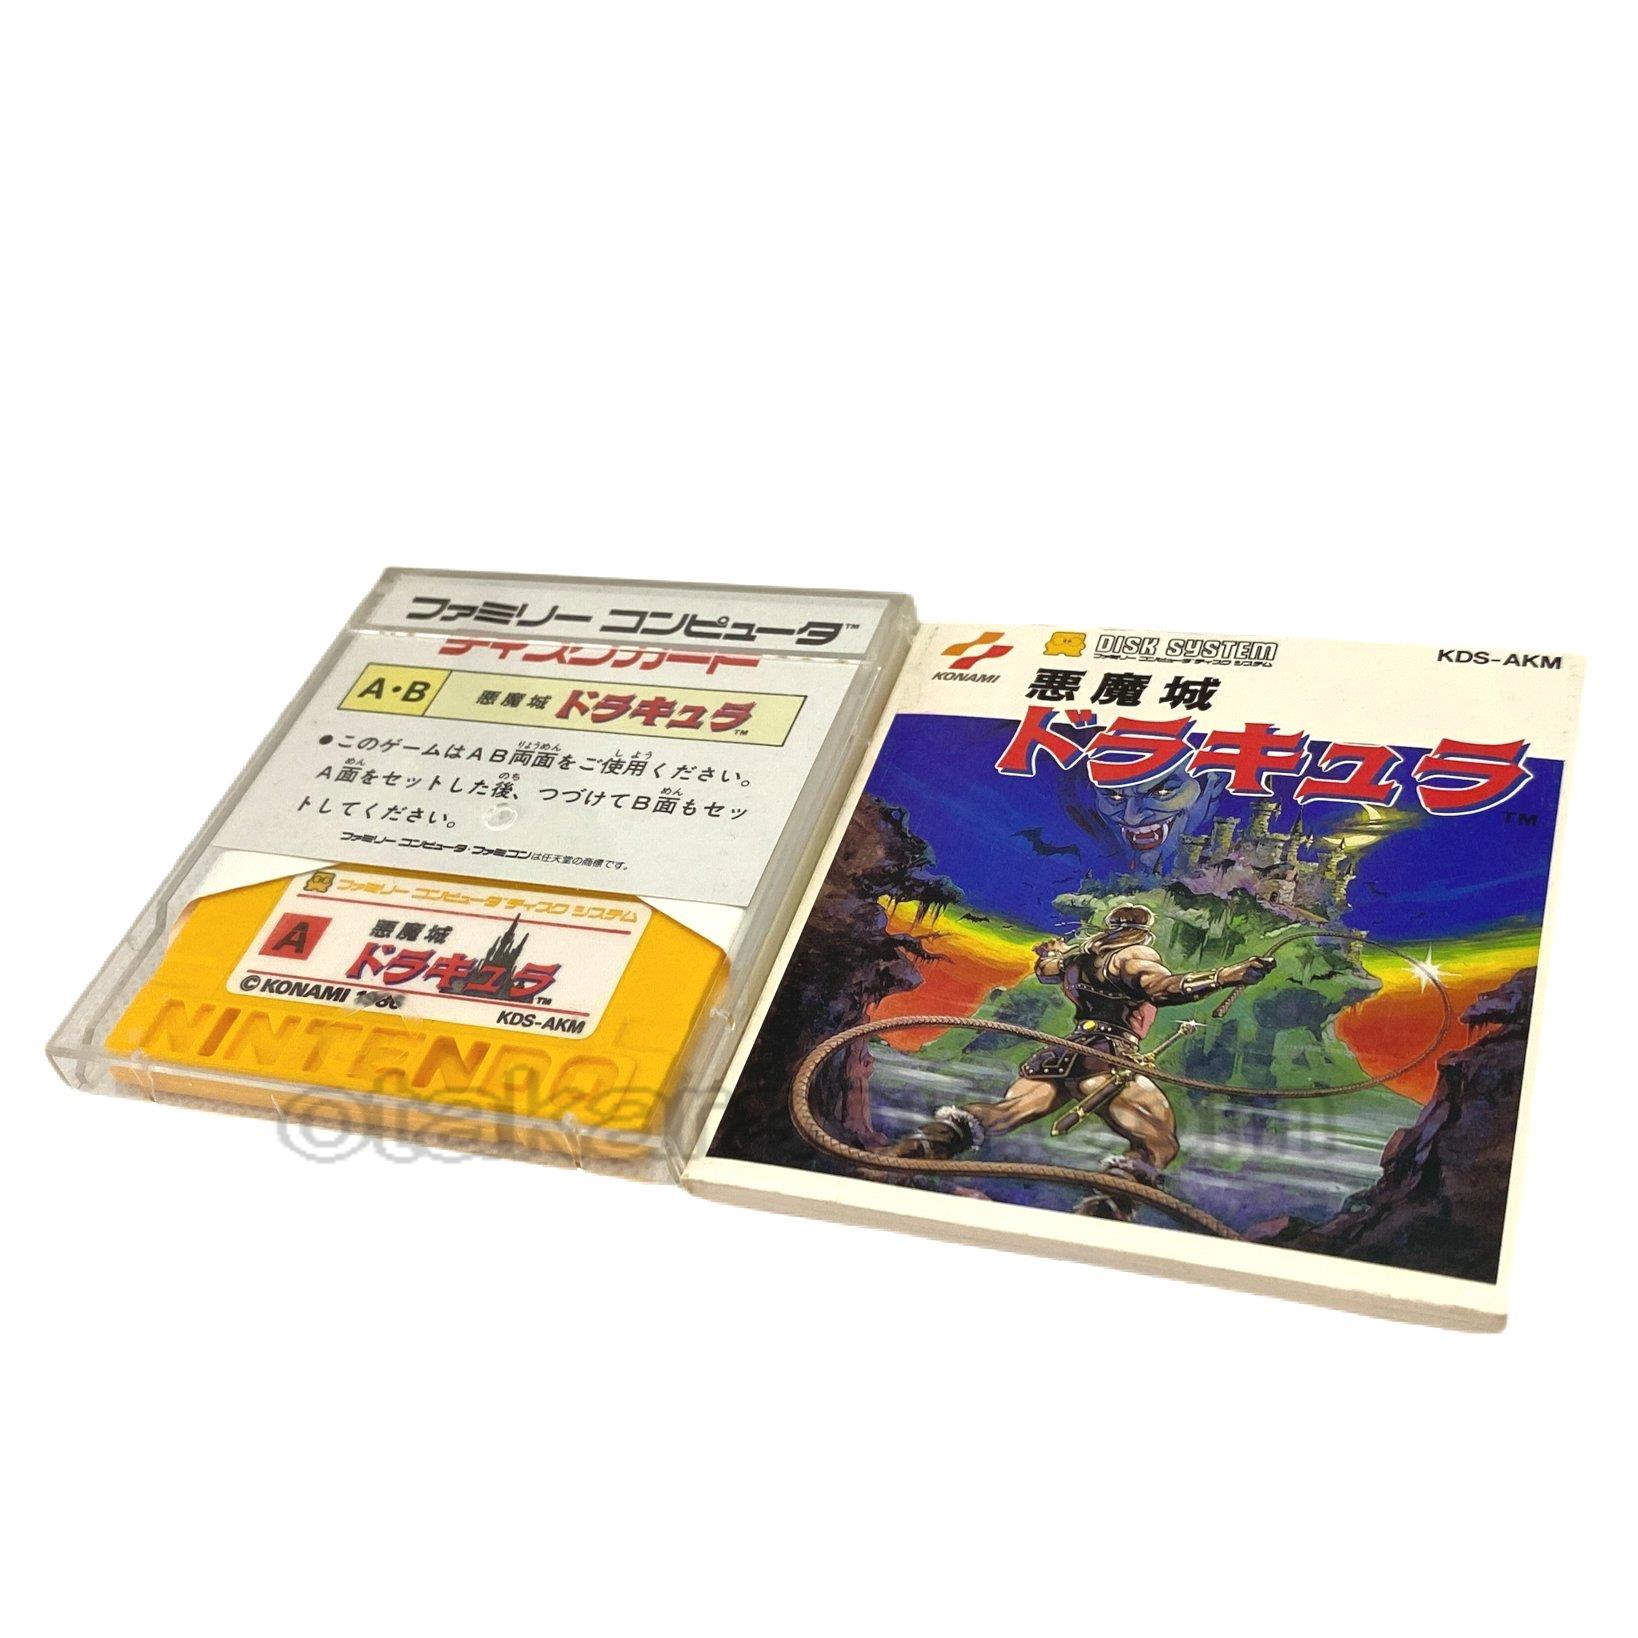 ファミコン ディスクシステムソフト 悪魔城ドラキュラ・カードを販売 